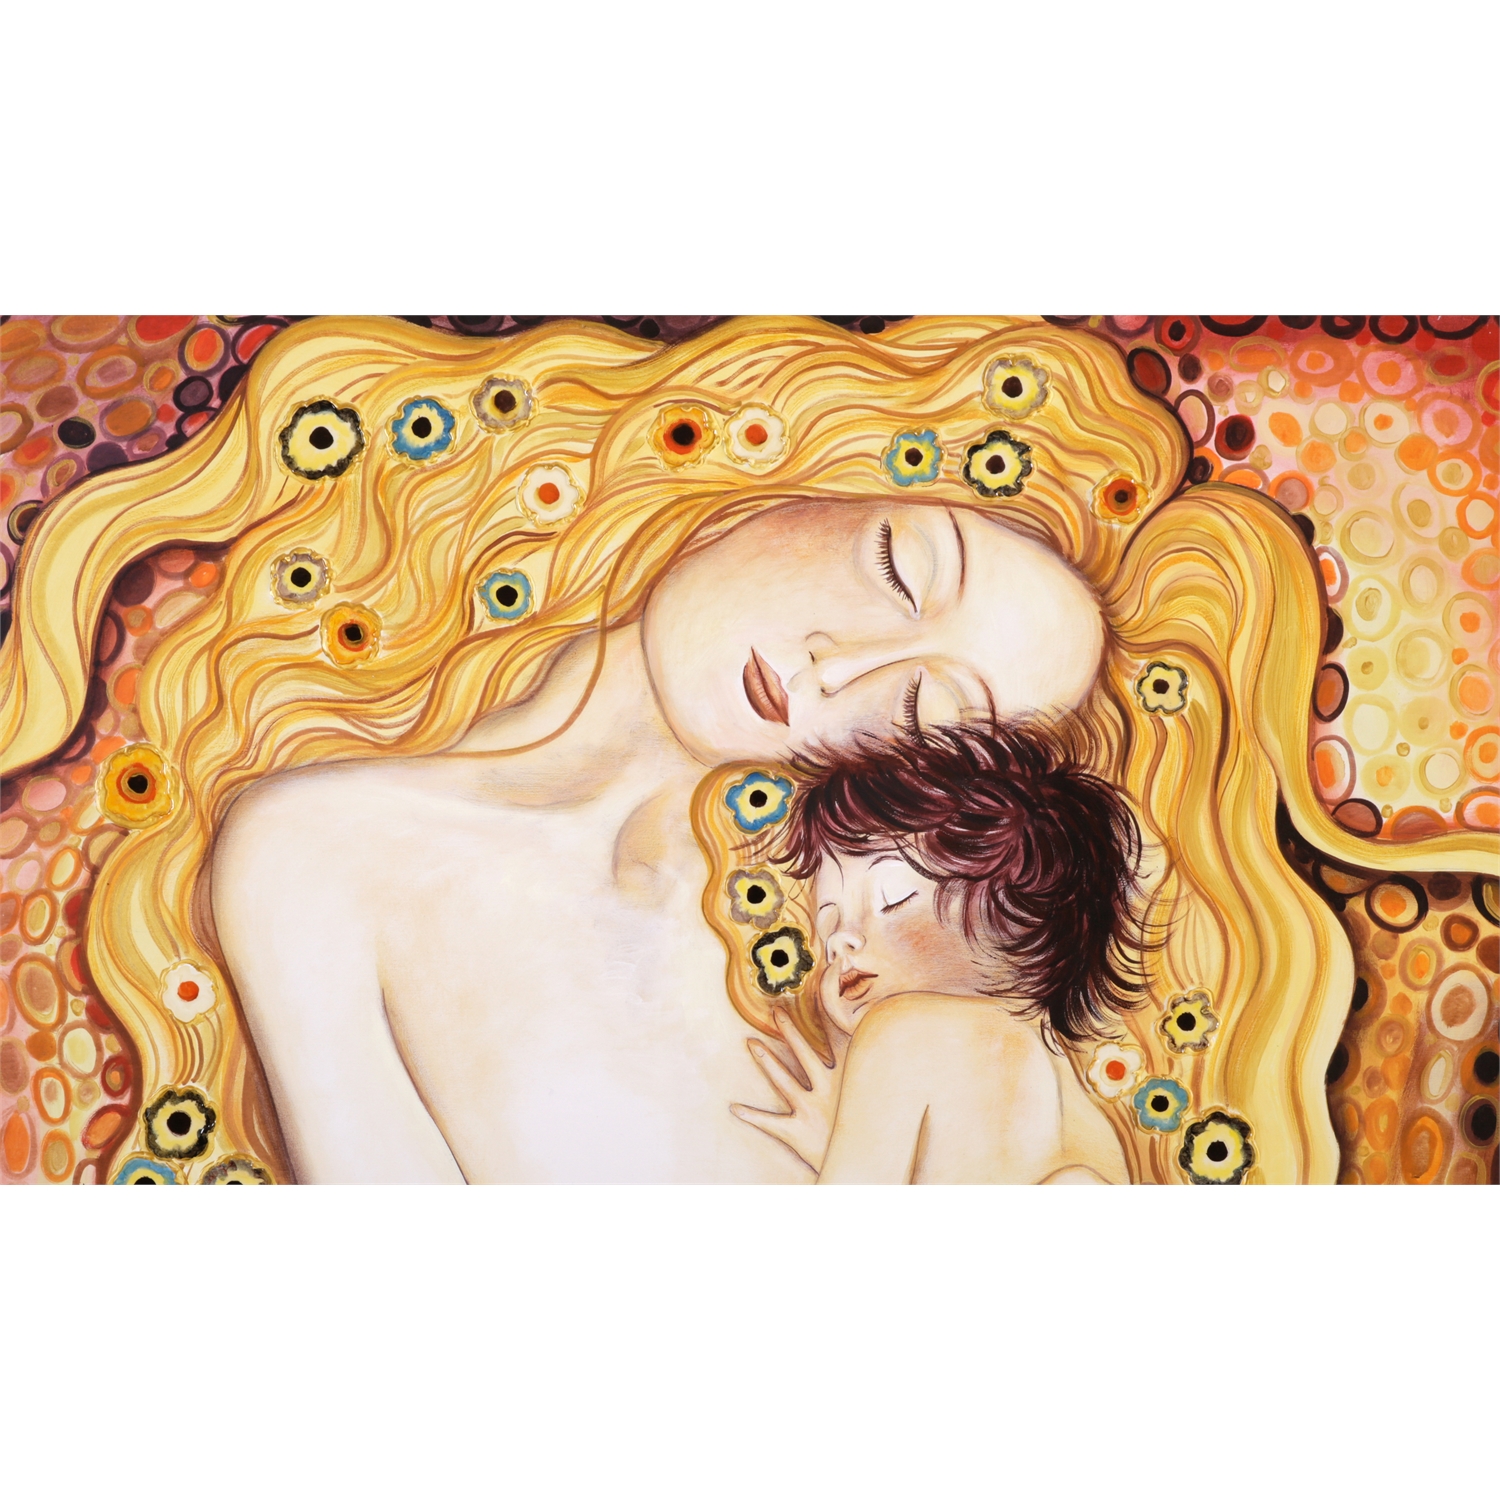  maternità di Klimt 100x68 nd